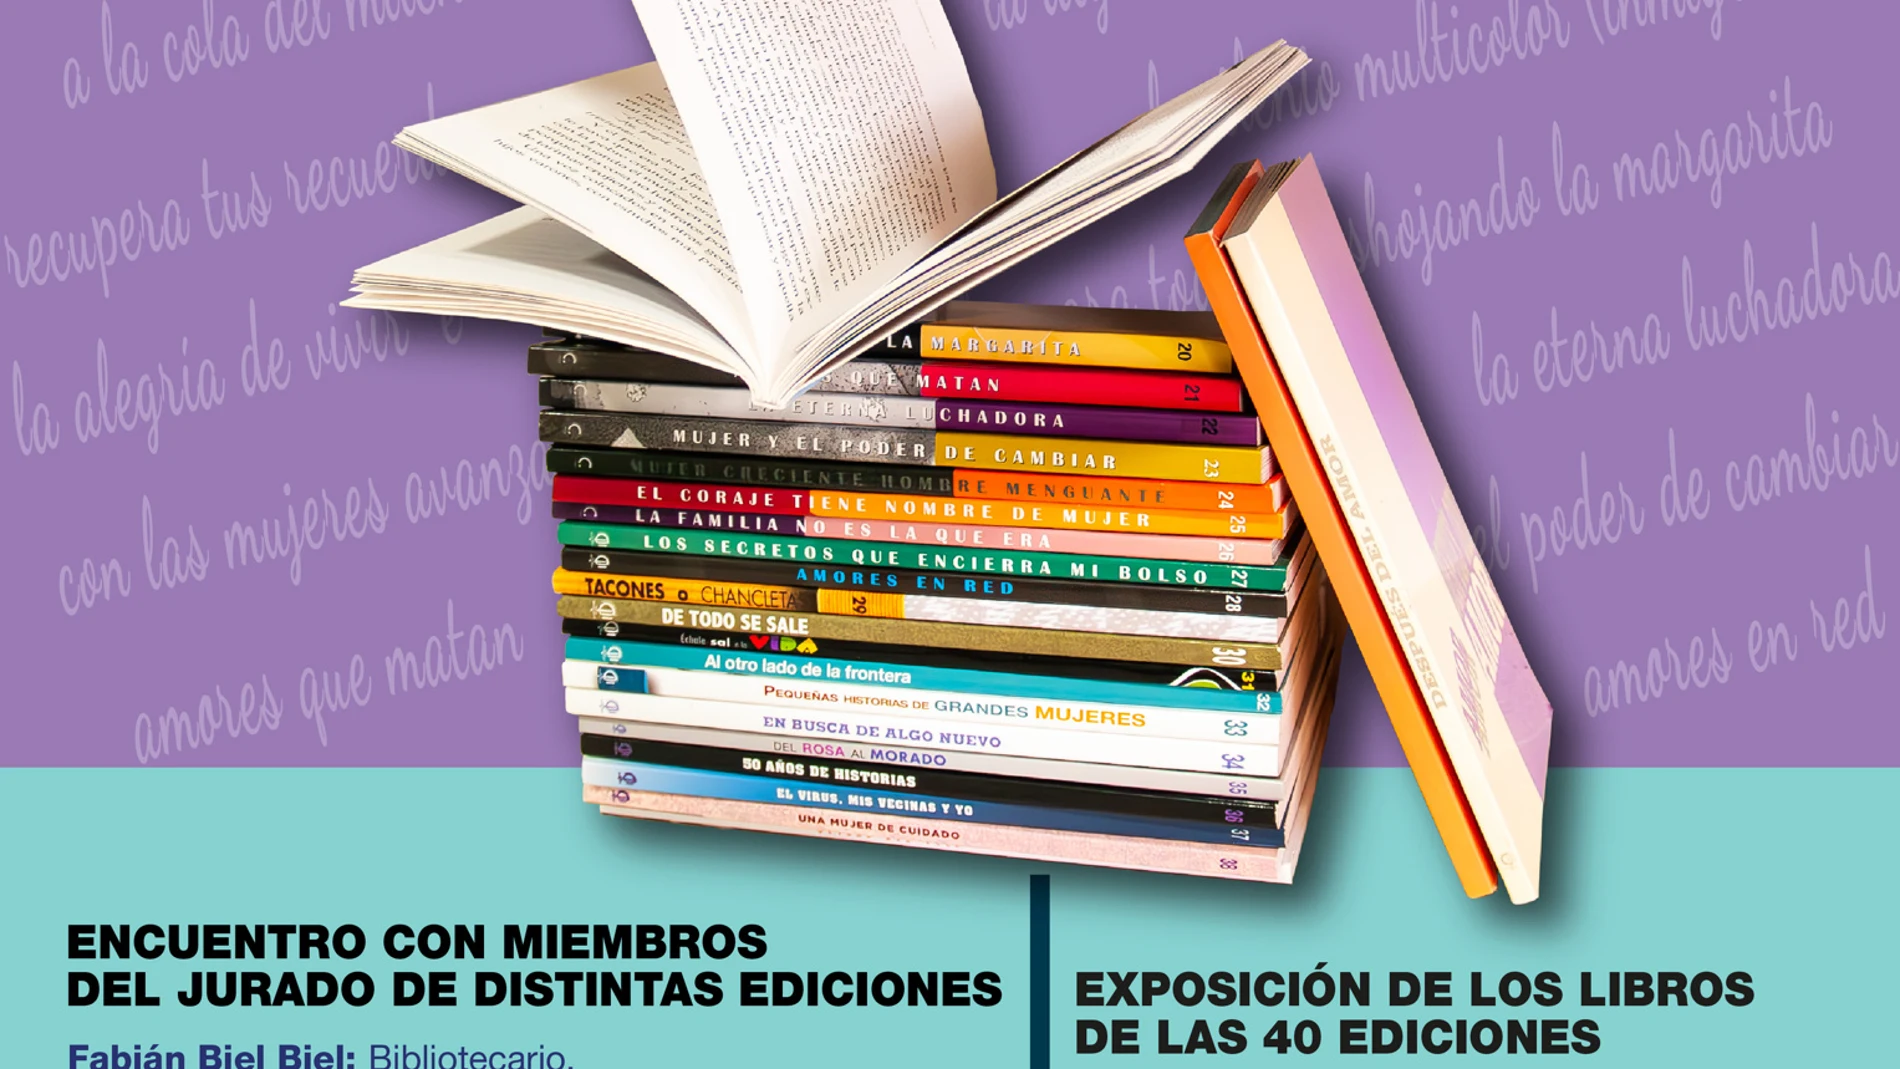 La Comisión de Mujeres Picarral celebra el 40 aniversario del Certamen Literario Picarral COMISIÓN DE MUJERES PICARRAL 15/04/2024